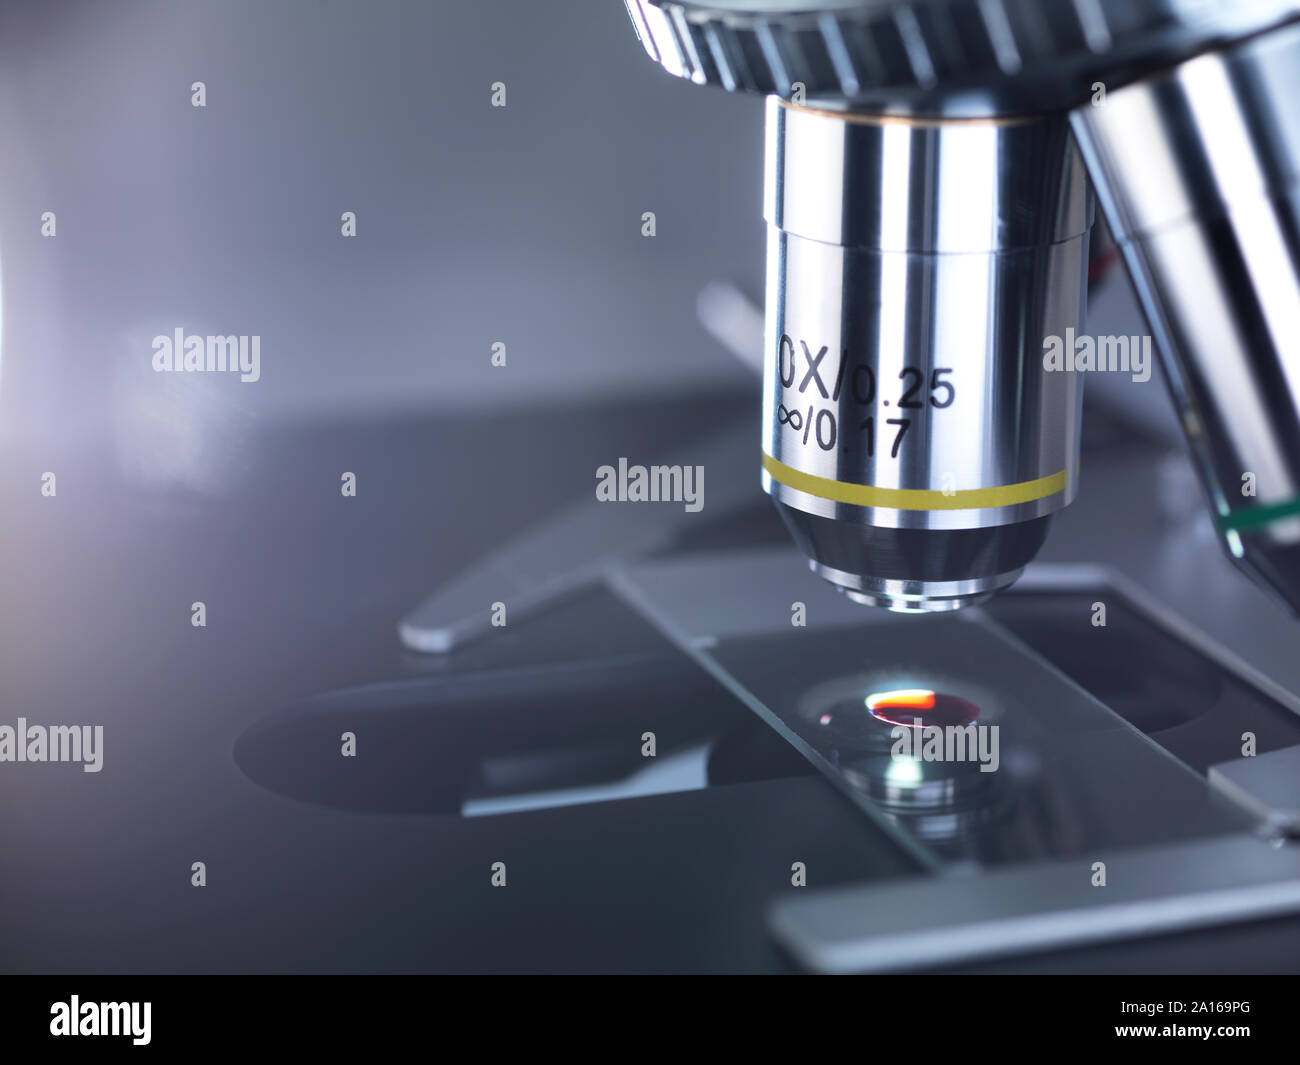 Die Probe auf einem Objektträger unter einem Mikroskop im Labor Stockfoto